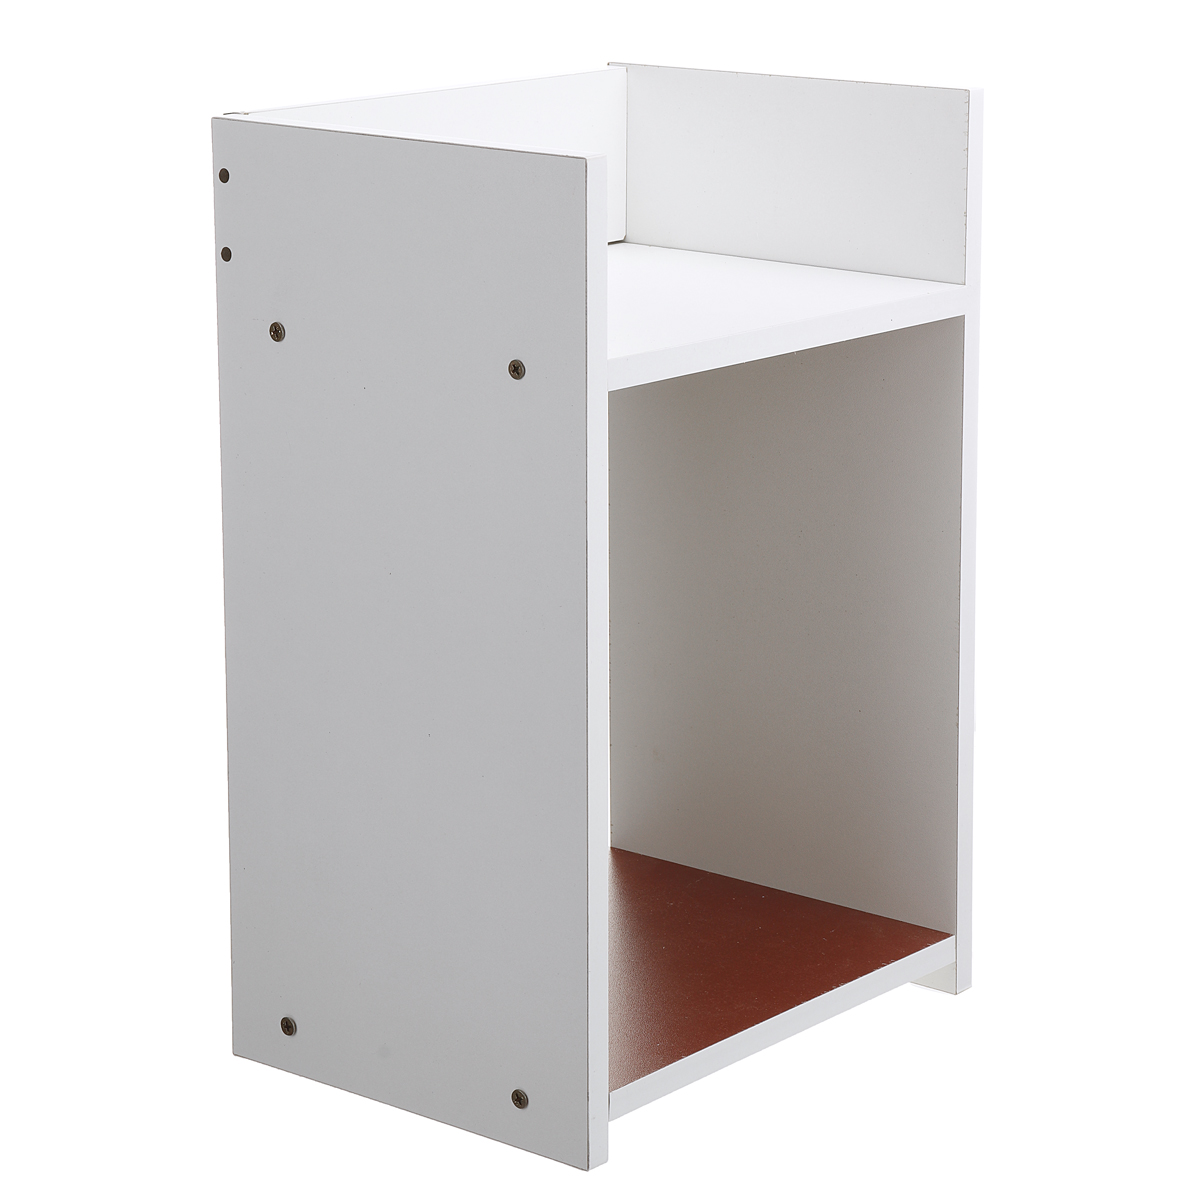 Assembled-Storage-Cabinet-Wooden-Storage-Bedside-Cabinet-White-Bedroom-Locker-for-Home-Office-1752104-8